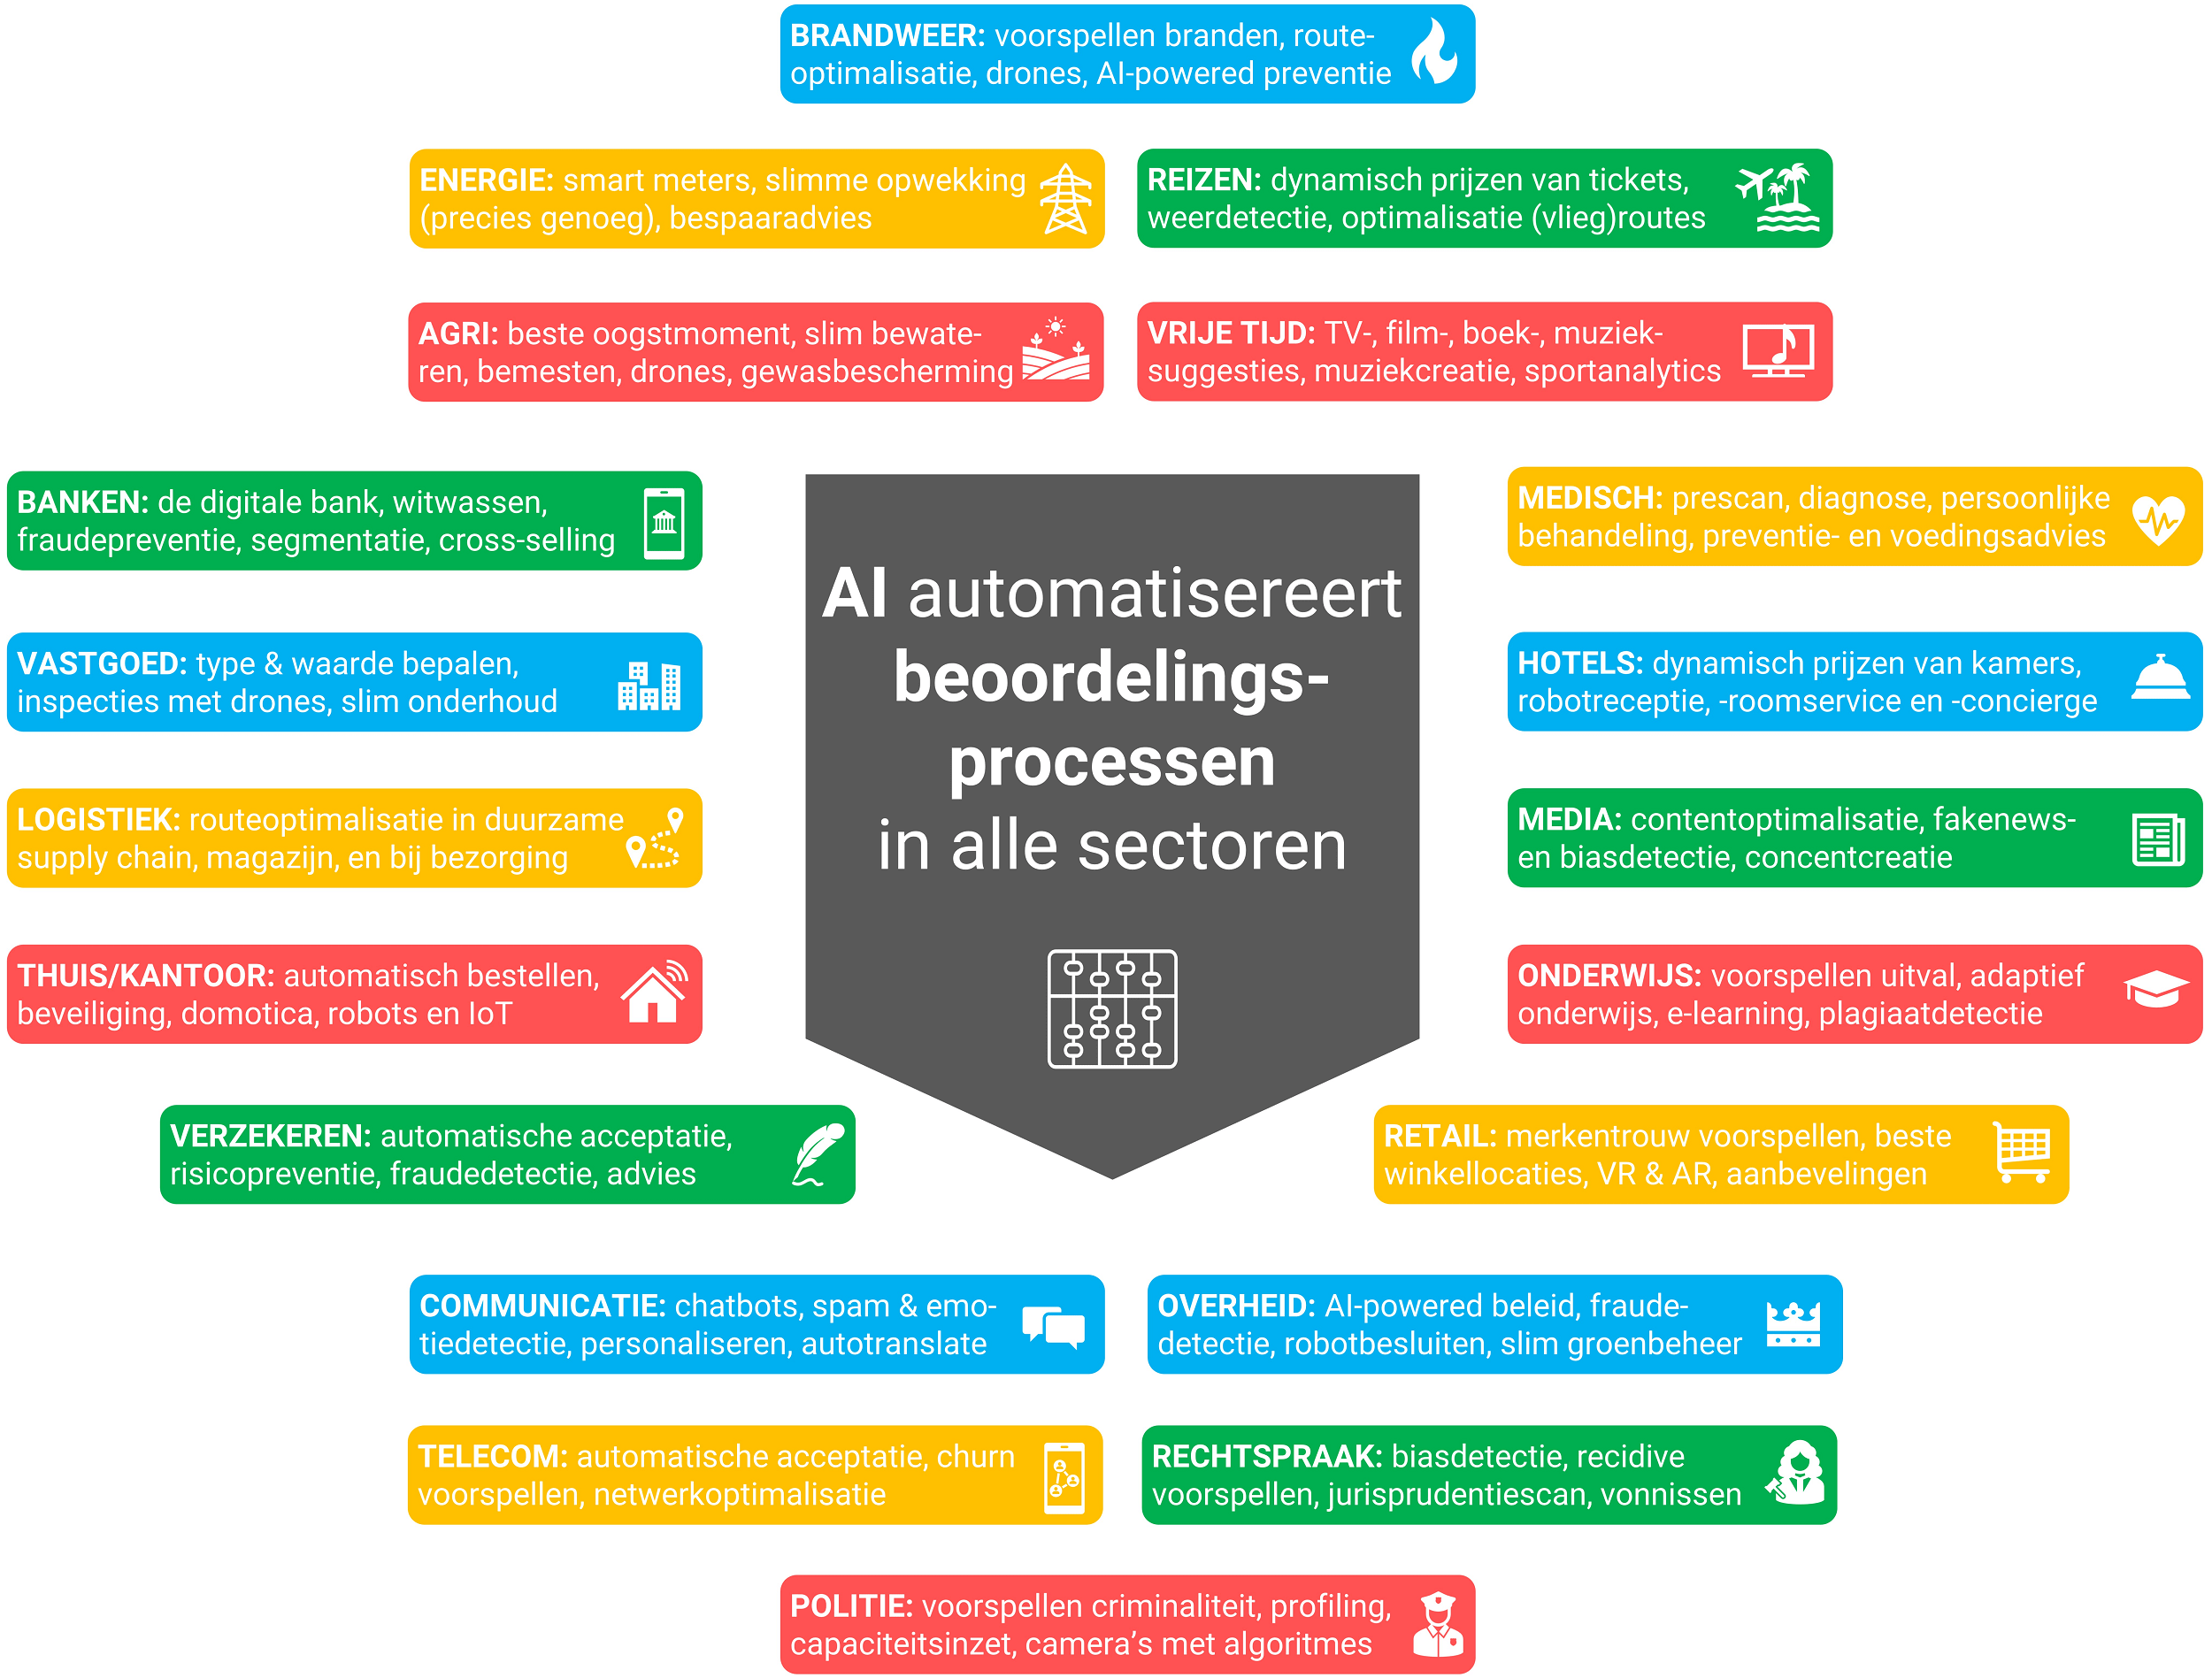 De AI-toepassingen uitgesplitst naar branches